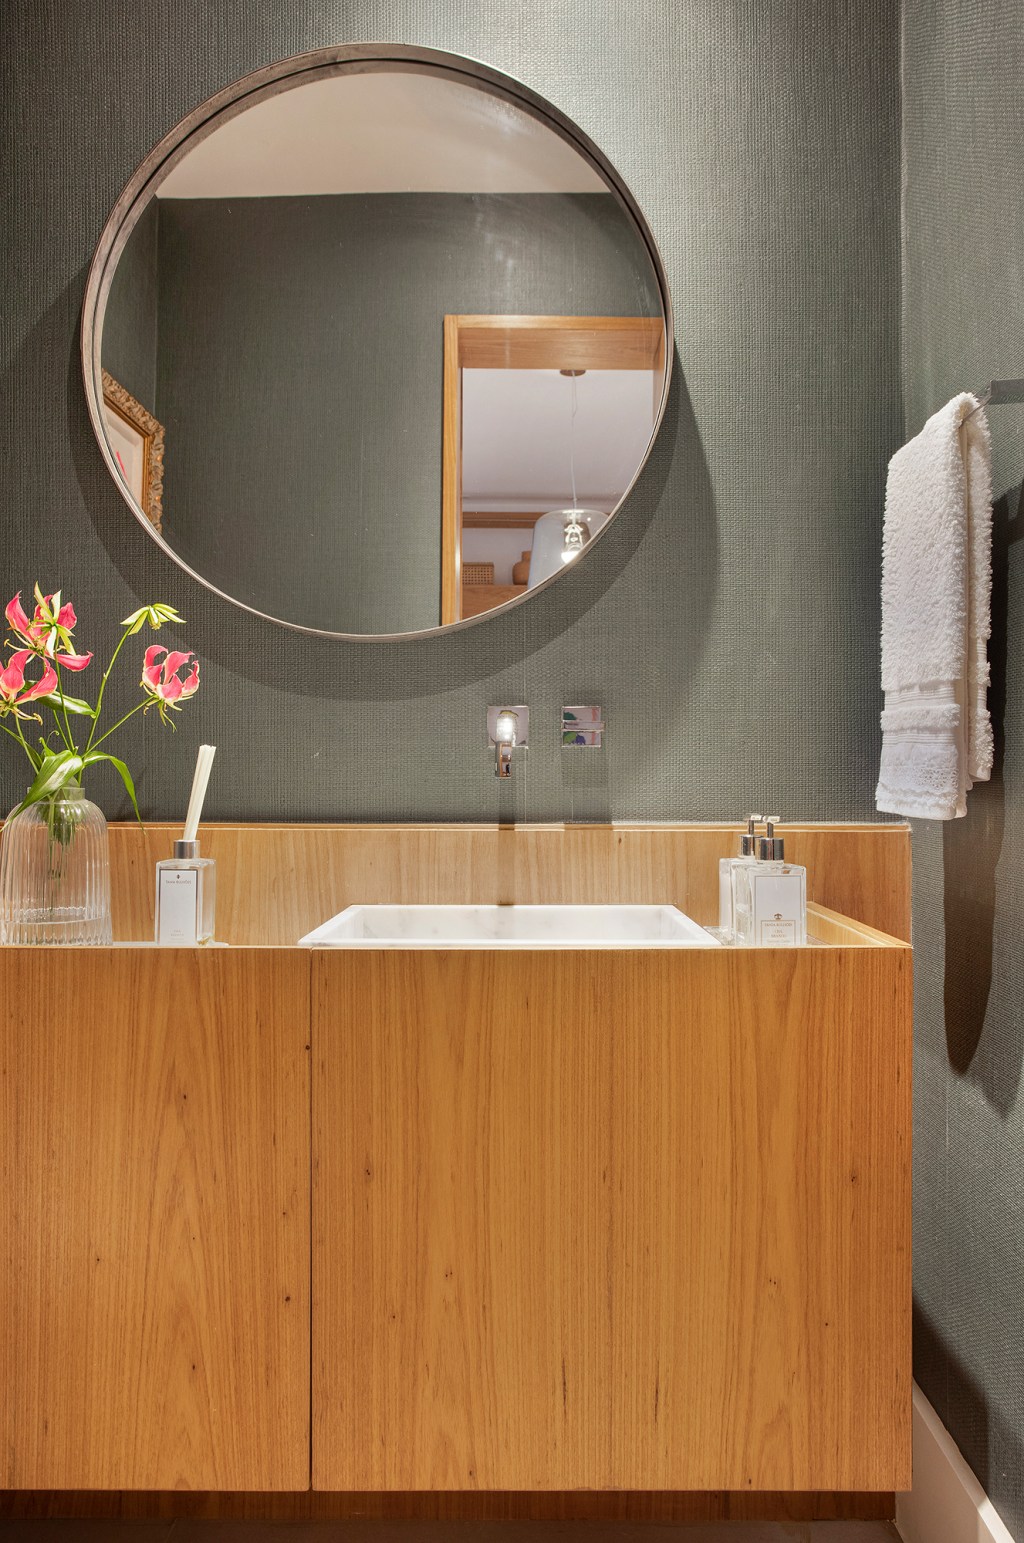 apartamento Bezamat Arquitetura rio de janeiro decoração banheiro lavabo espelho pia torneira